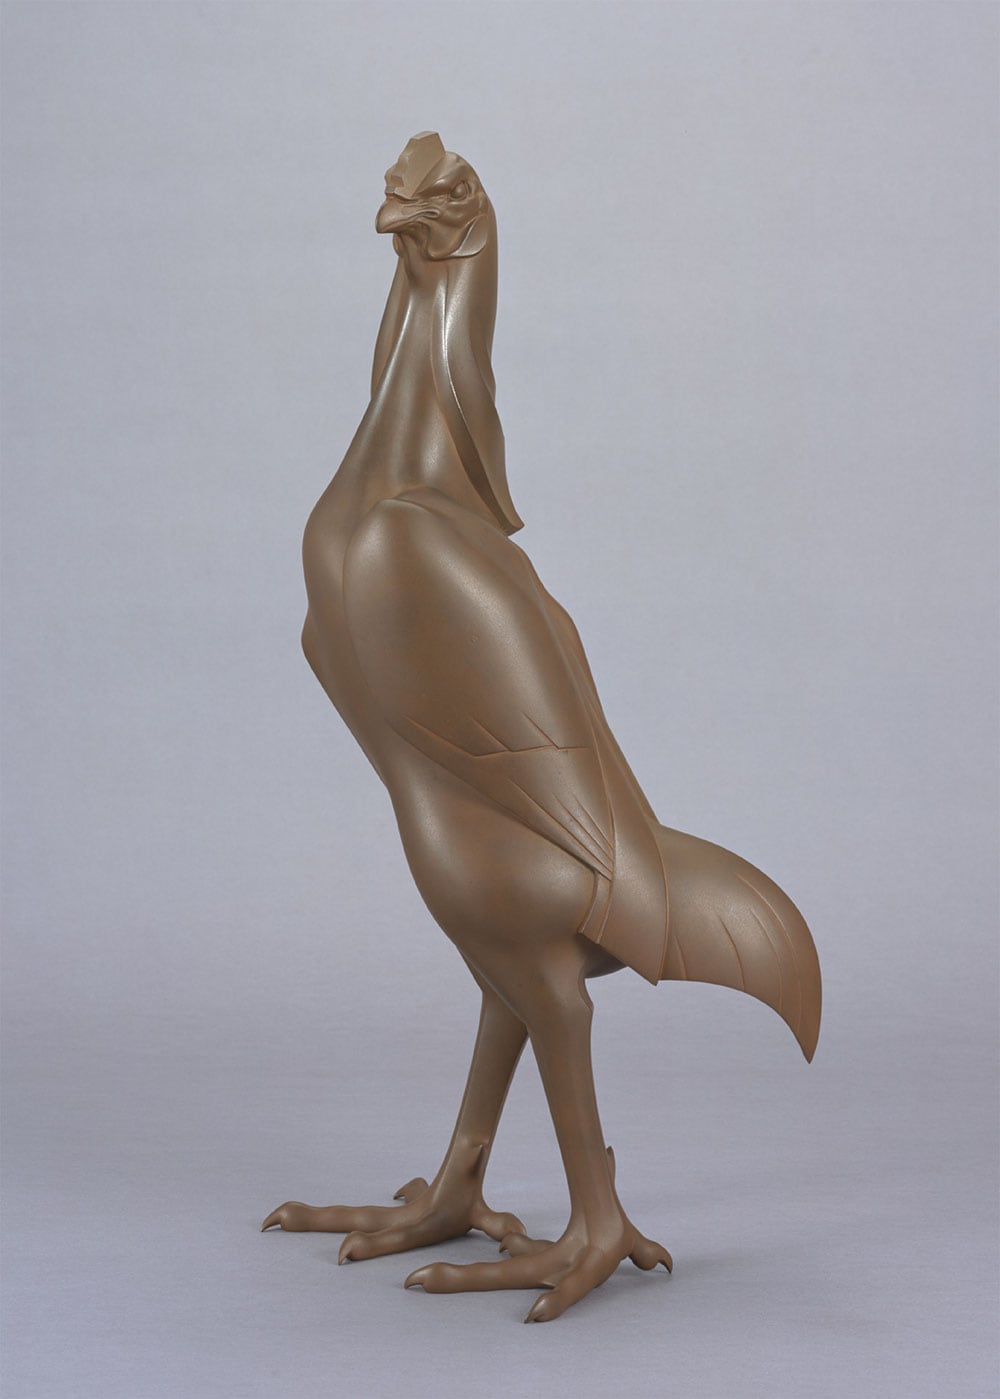 津田信夫《英雄闘志  鋳銅軍鶏置物》1934年。鋳金工芸の巨匠が、得意とする動物のモチーフに取り組んだ名品。